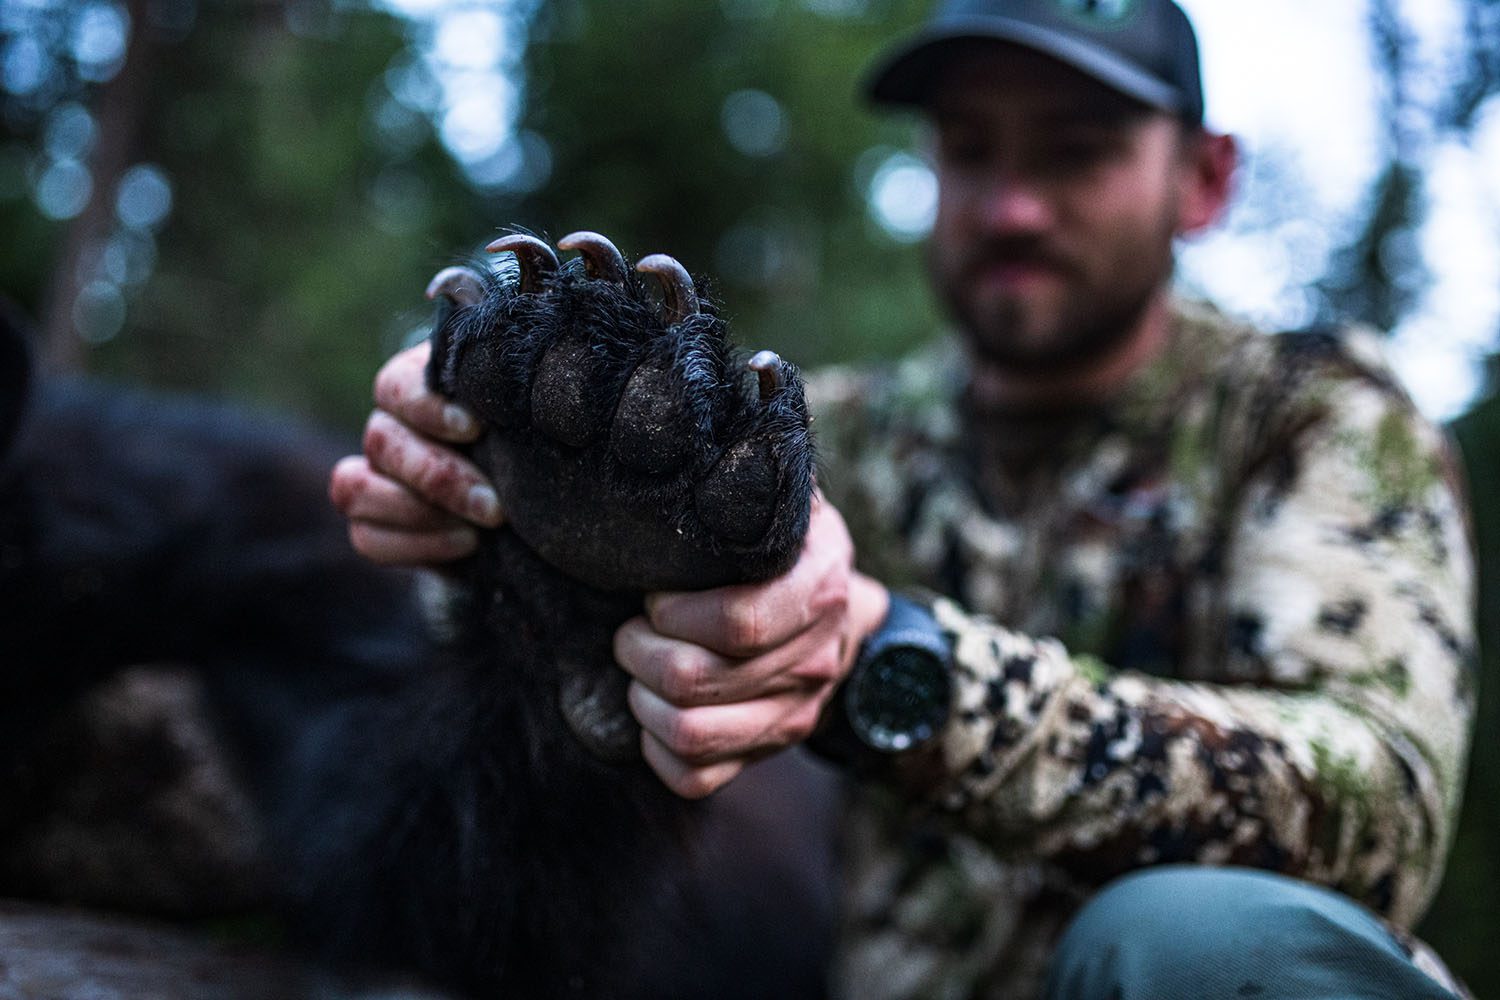 Kyle Hanson with a nice Idaho black bear